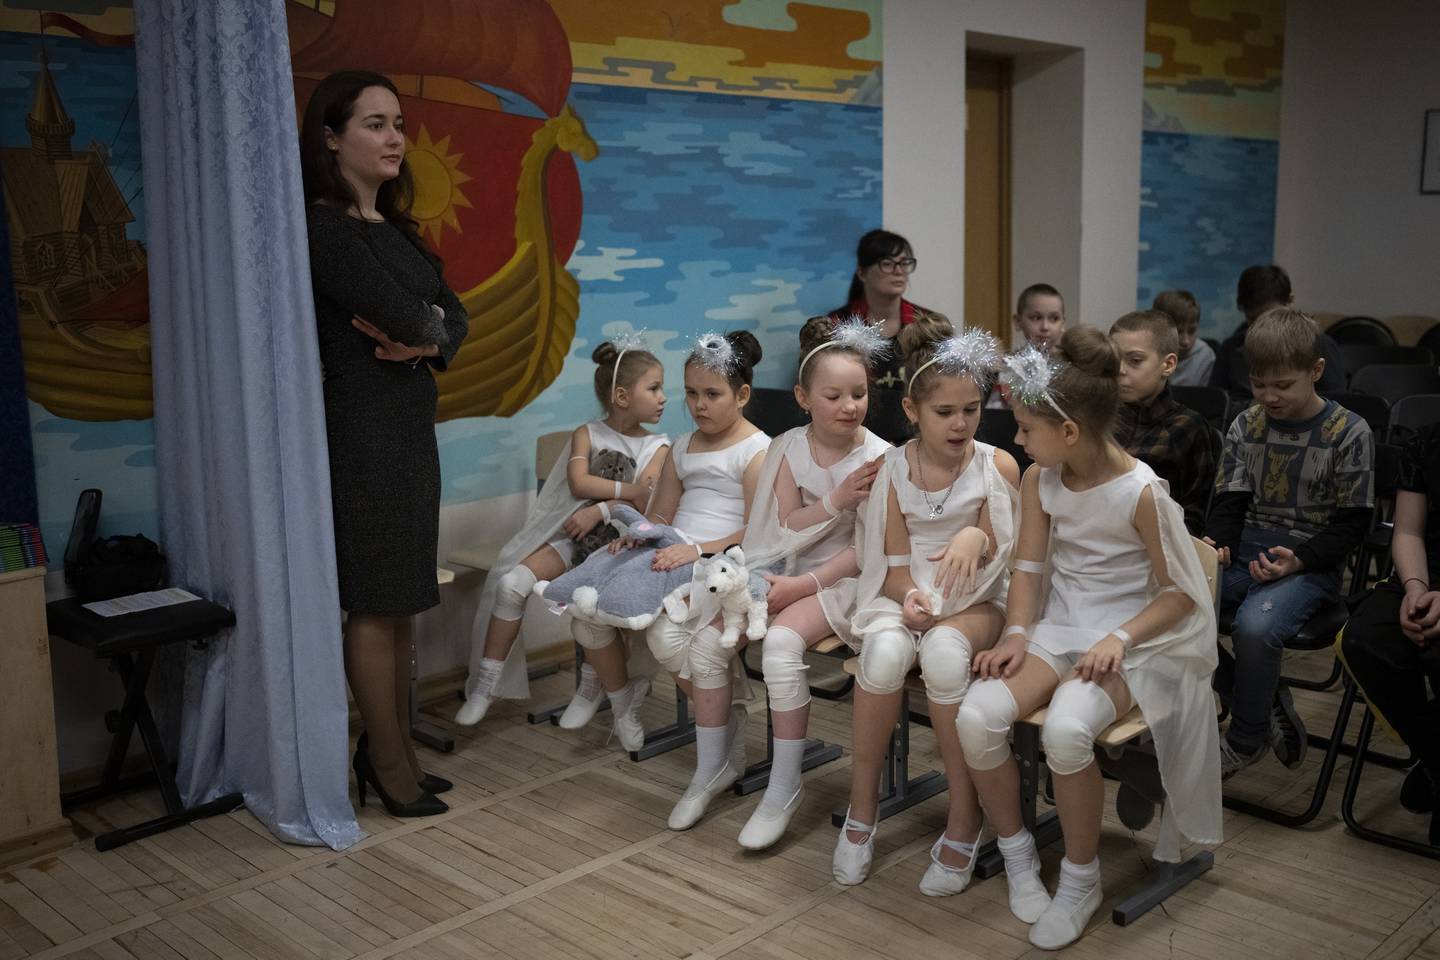 BARN: – Barn er barn over hele verden. Målet vårt er at alle barn skal være glade og trygge, sier assisterende direktør ved Barentsburg skole, Svetlana Yanevska, om markeringen.